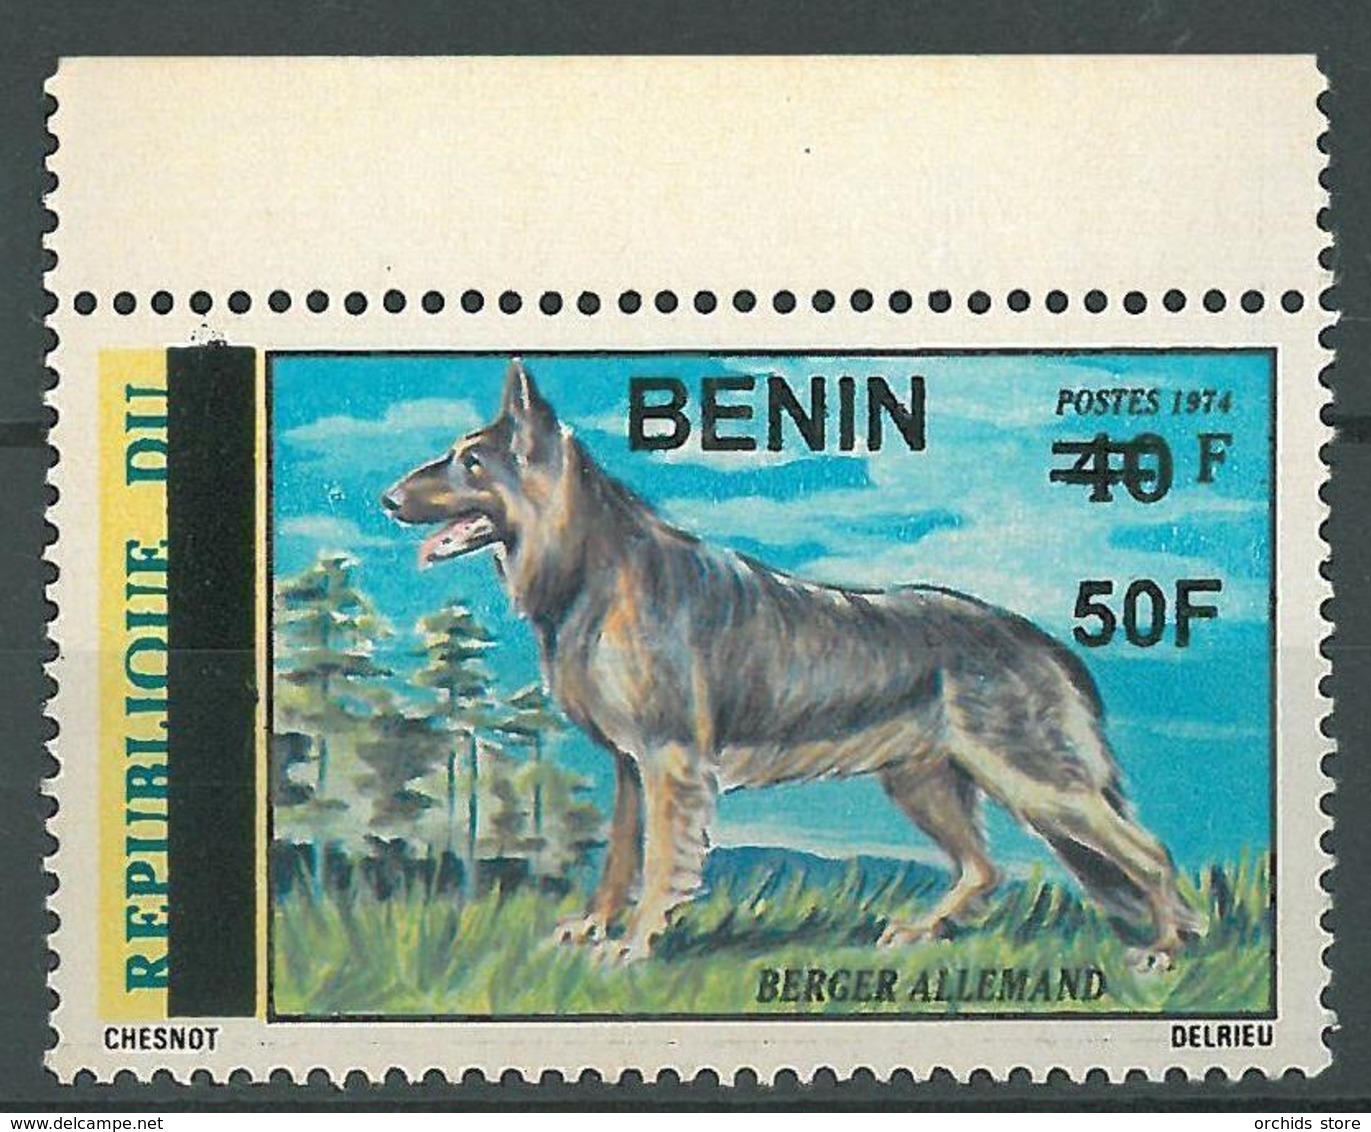 Benin 2009 MNH - German Shepherd Dog Animal Ovptd 50F - Cv 70$ - Benin - Dahomey (1960-...)